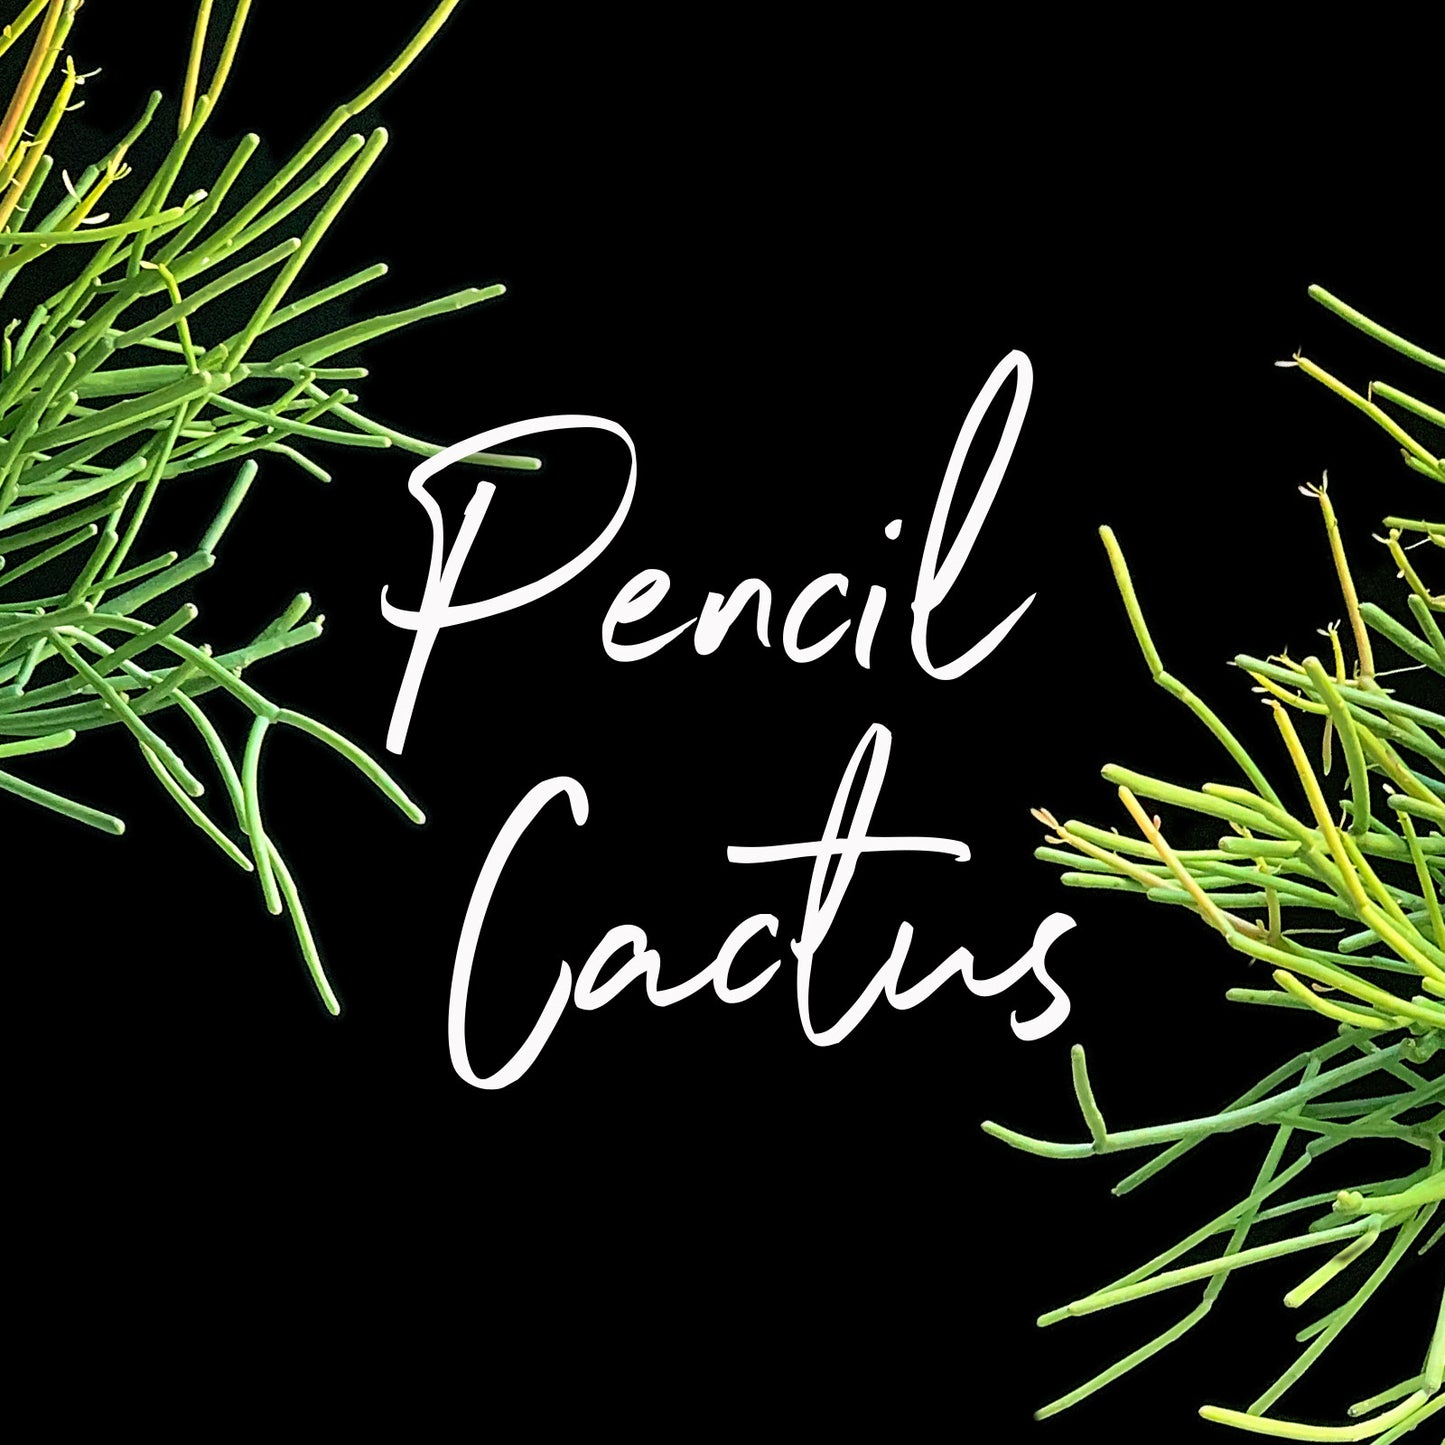 Plant Life: Pencil Cactus